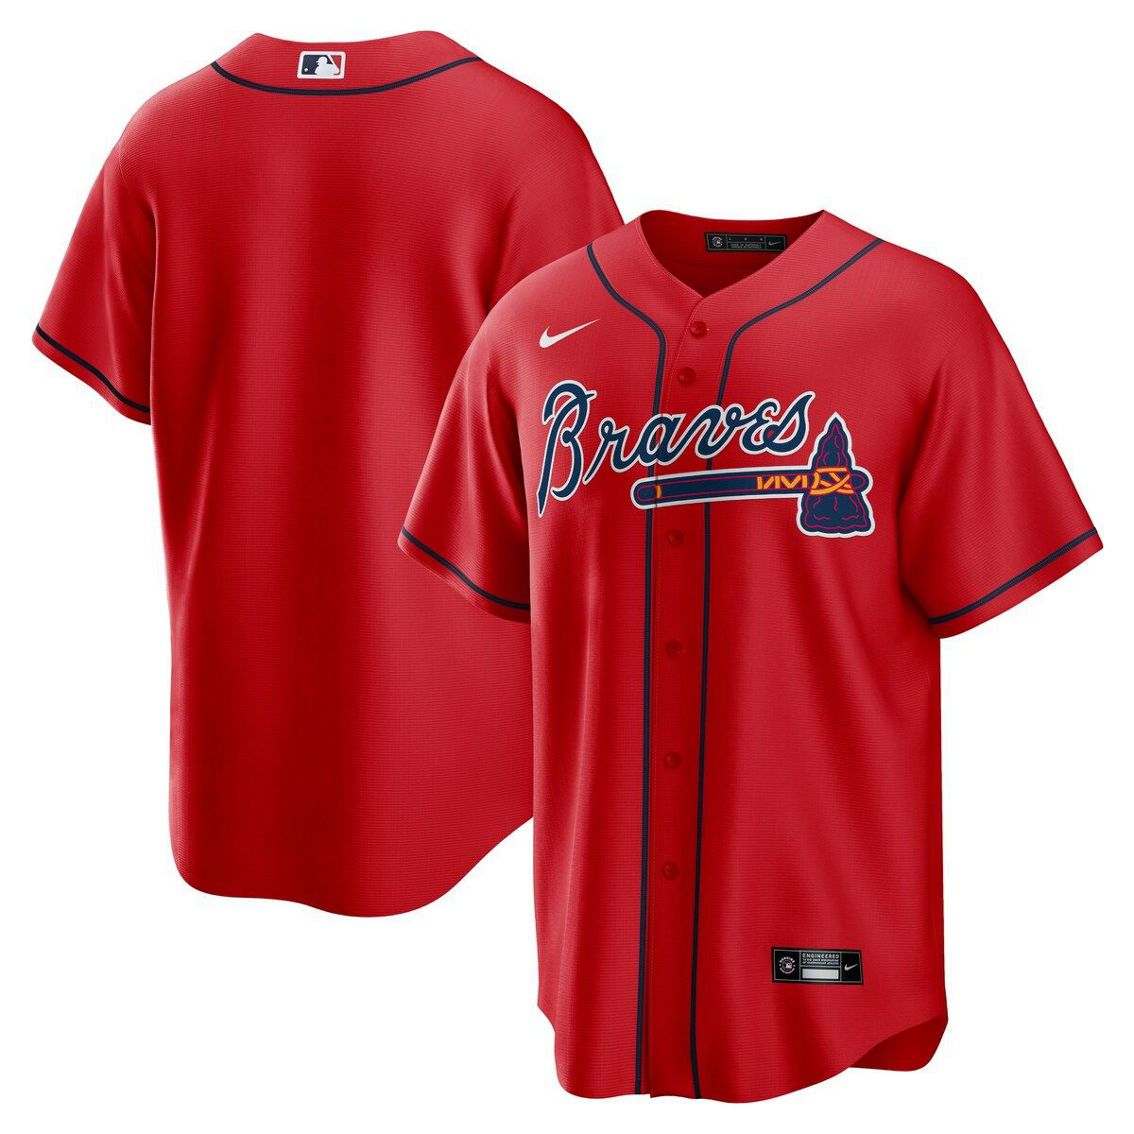 Nike Men's Red Atlanta Braves Alternate Replica Team Jersey - Image 2 of 4